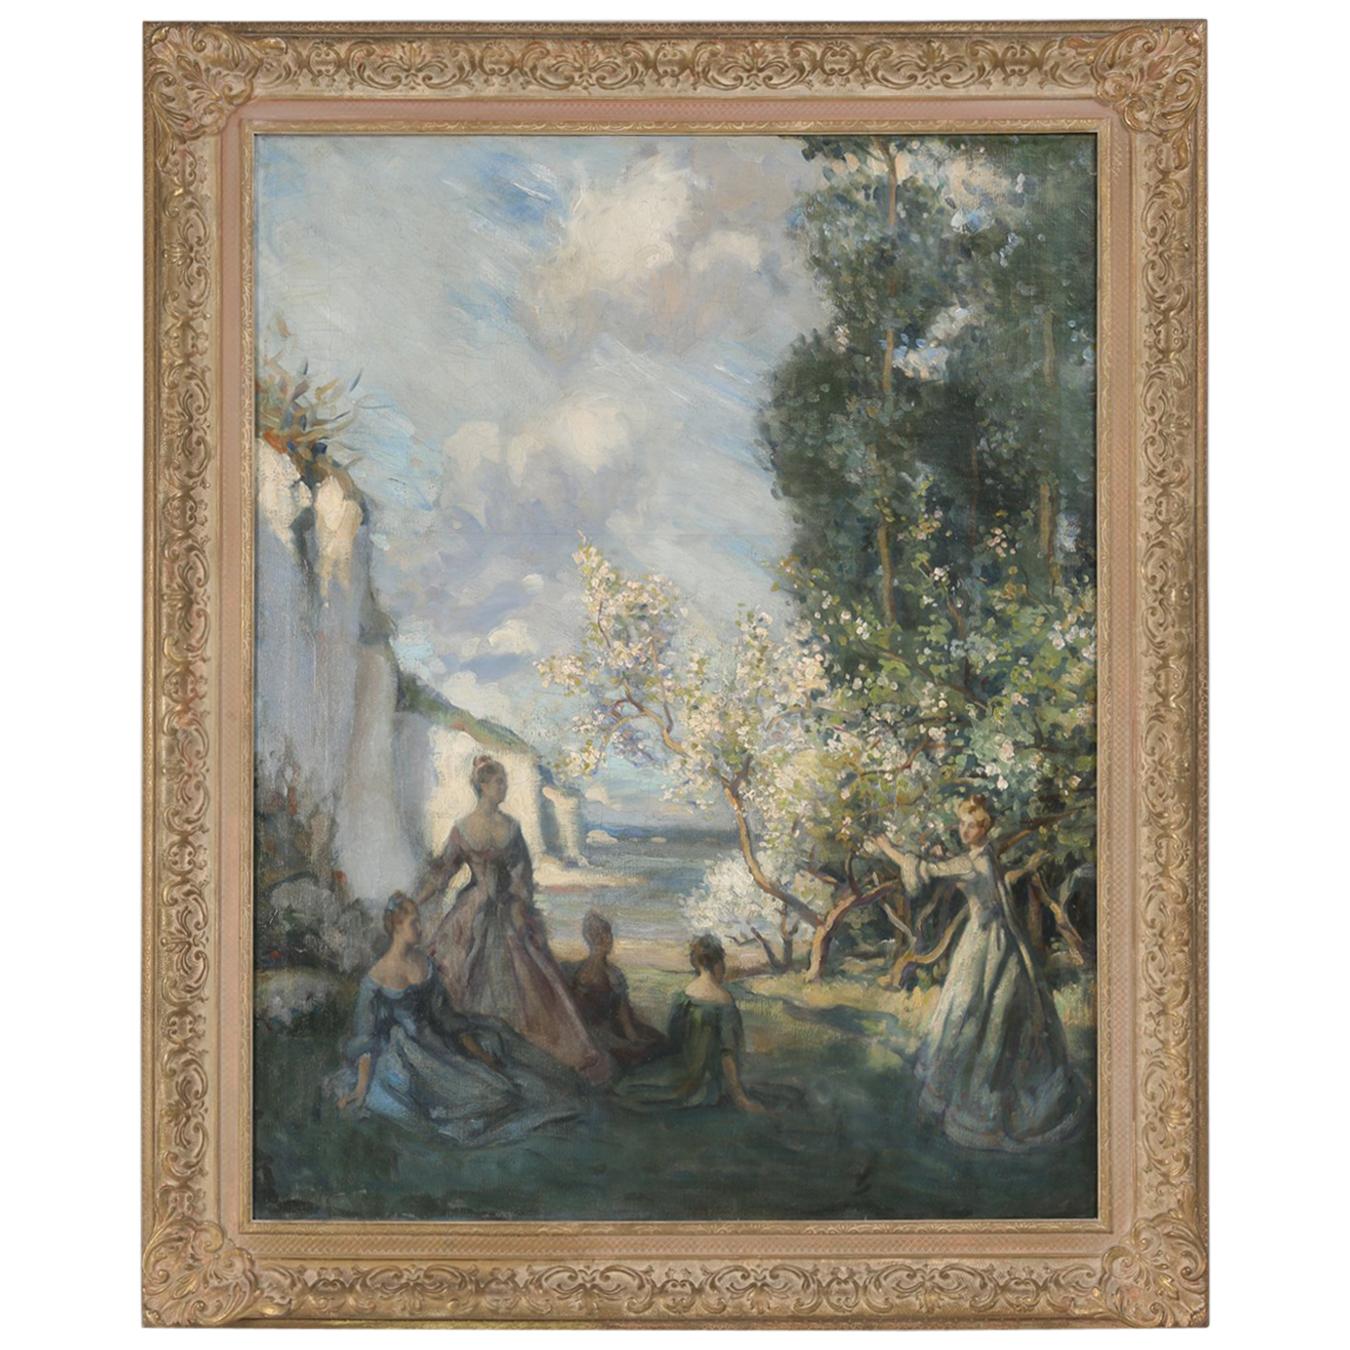 Europäisches impressionistisches Ölgemälde des europäischen Impressionismus, um 1900-1920